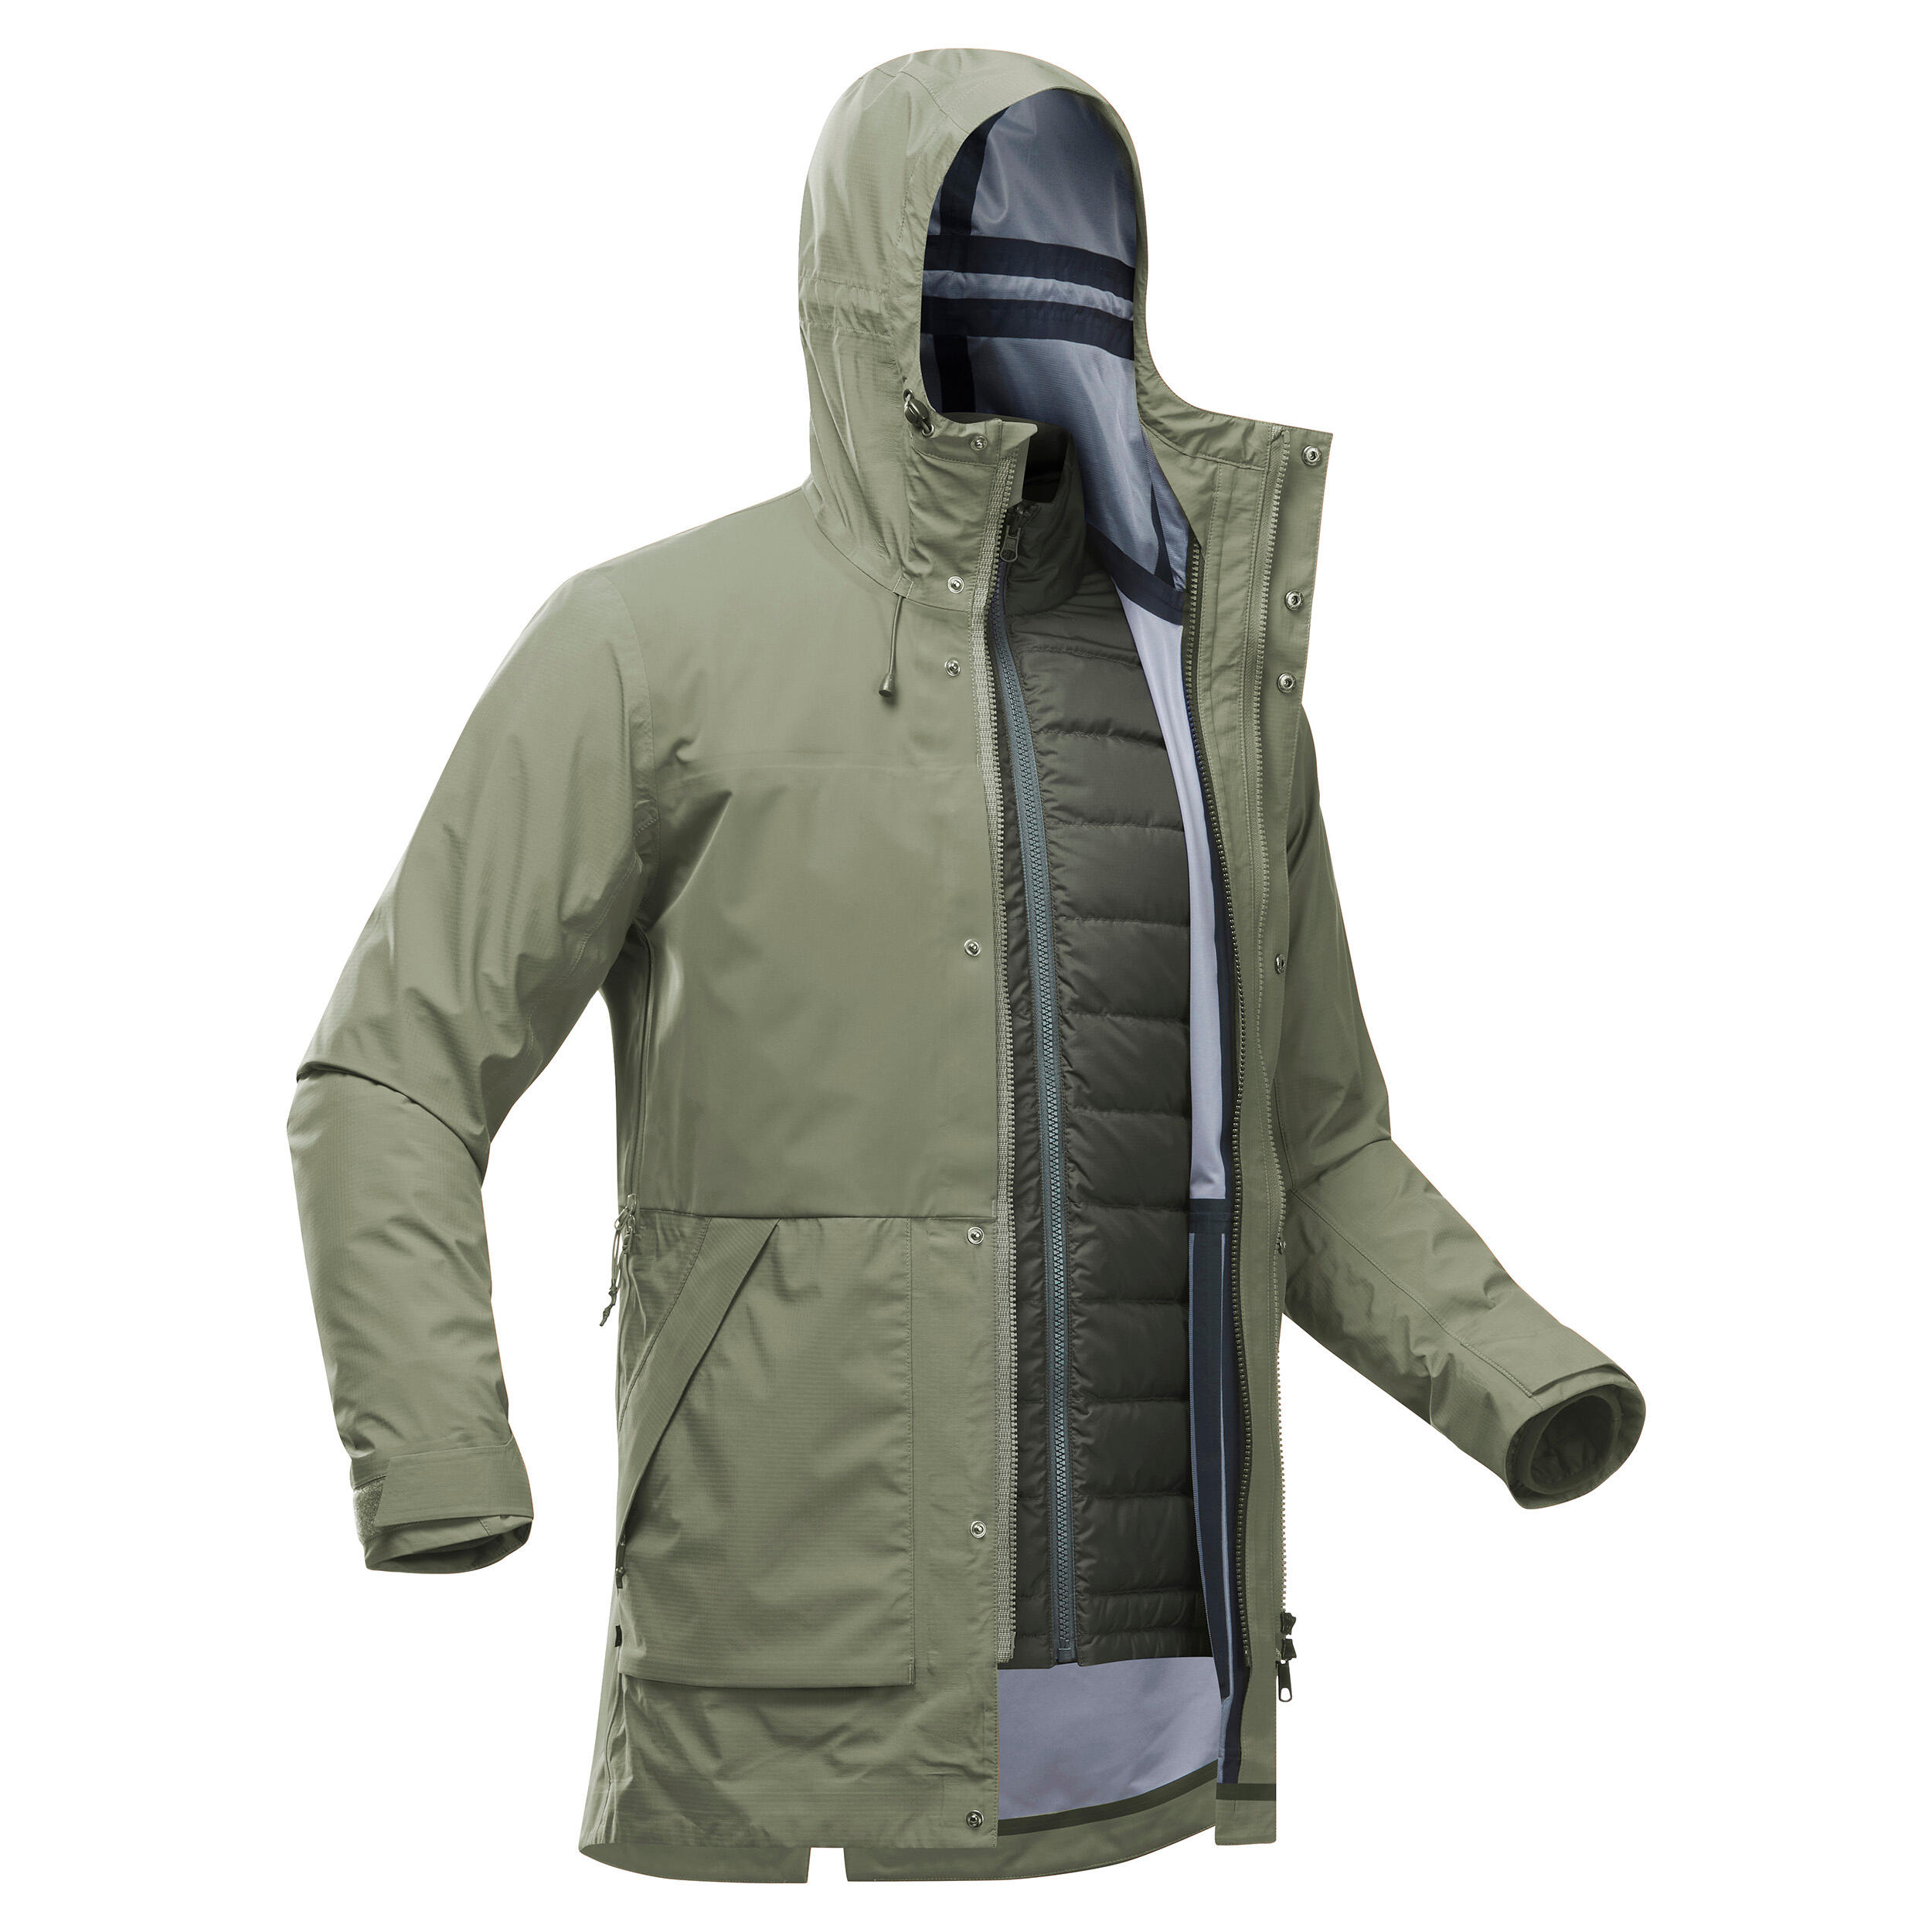  Men's Travel Trekking 3-in-1 Waterproof Jacket Travel 900 Compact -10°C - khaki 3/17